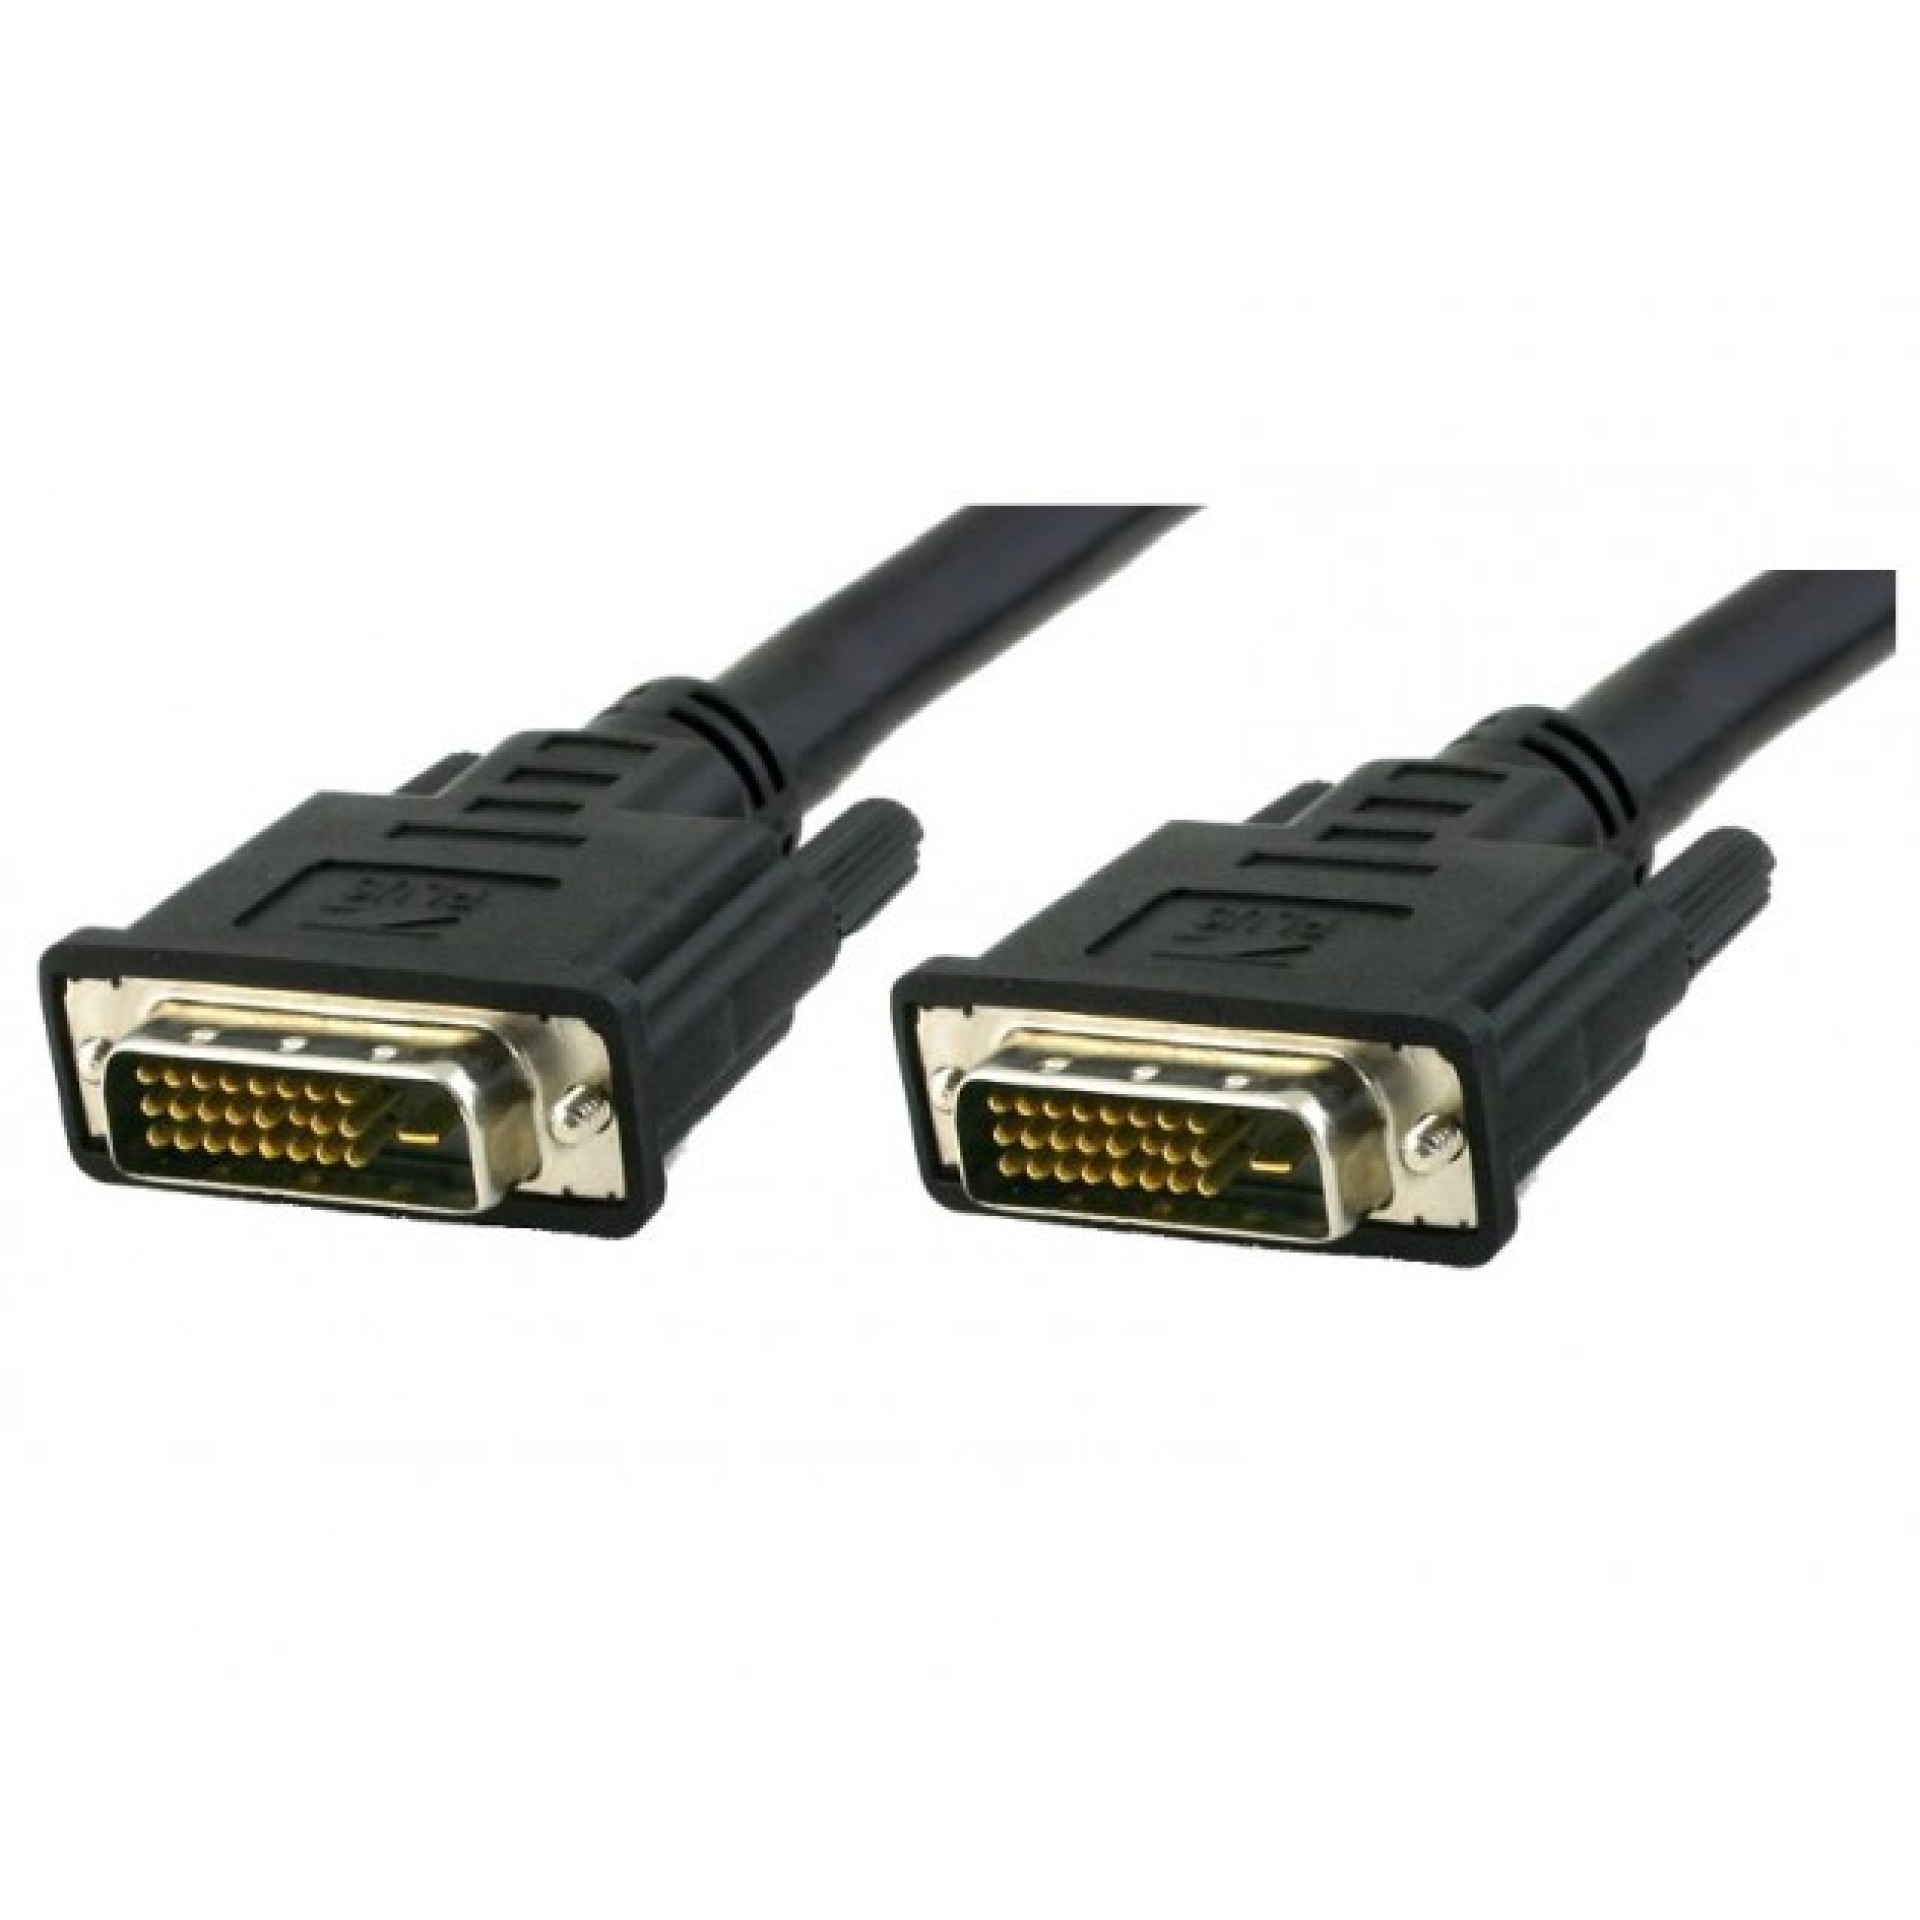 DVI-D Dual-Link Anschlusskabel Stecker/Stecker, schwarz, 1,8 m